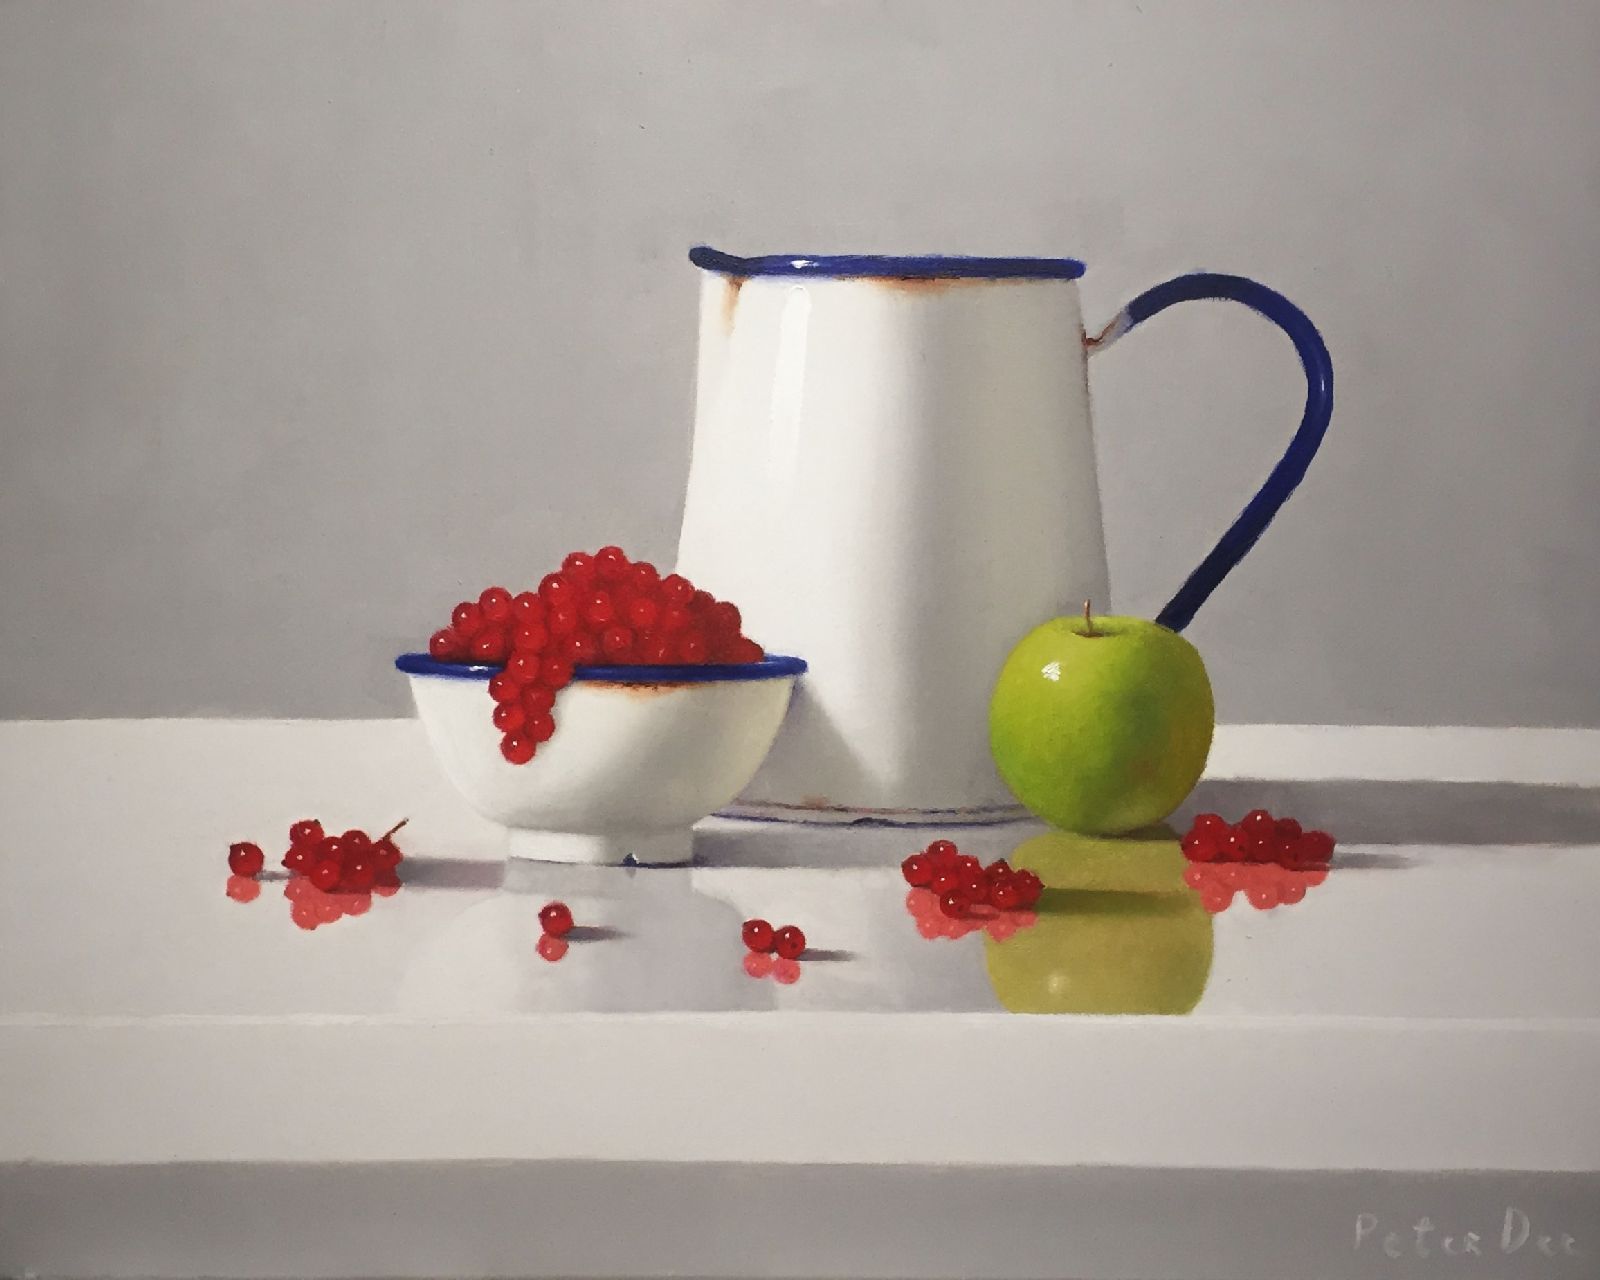 Peter Dee - Vintage Enamelware with Fruit